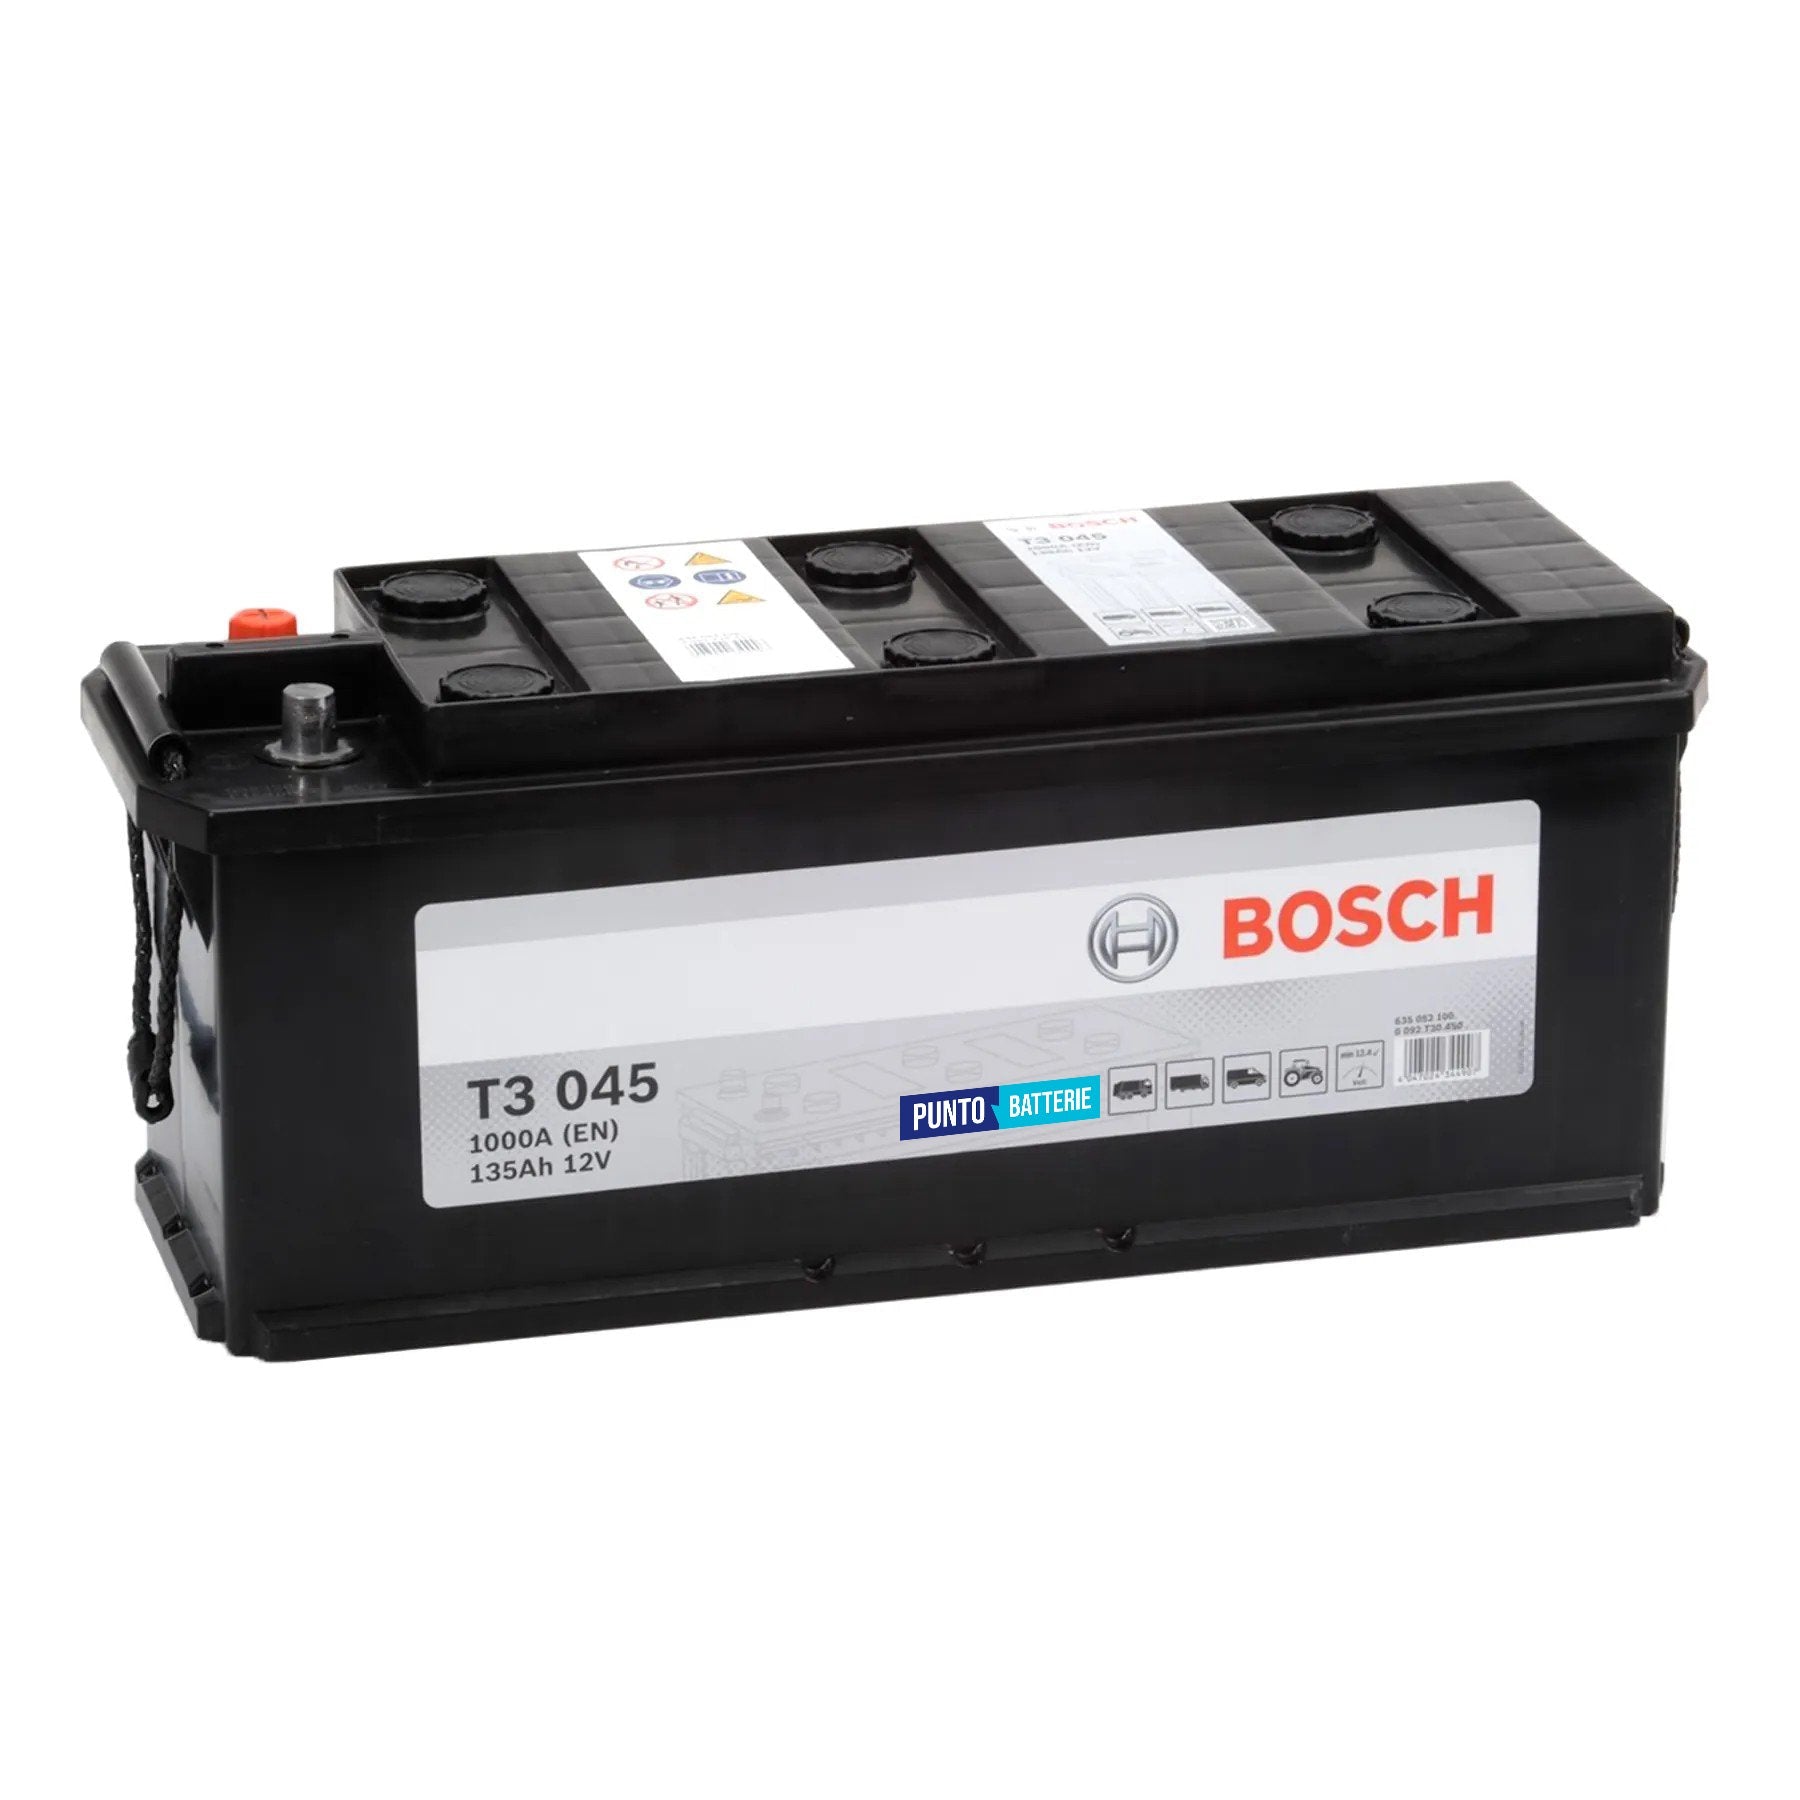 Batteria originale Bosch T3 T3045, dimensioni 514 x 175 x 210, polo positivo a sinistra, 12 volt, 135 amperora, 1000 ampere. Batteria per camion e veicoli pesanti.